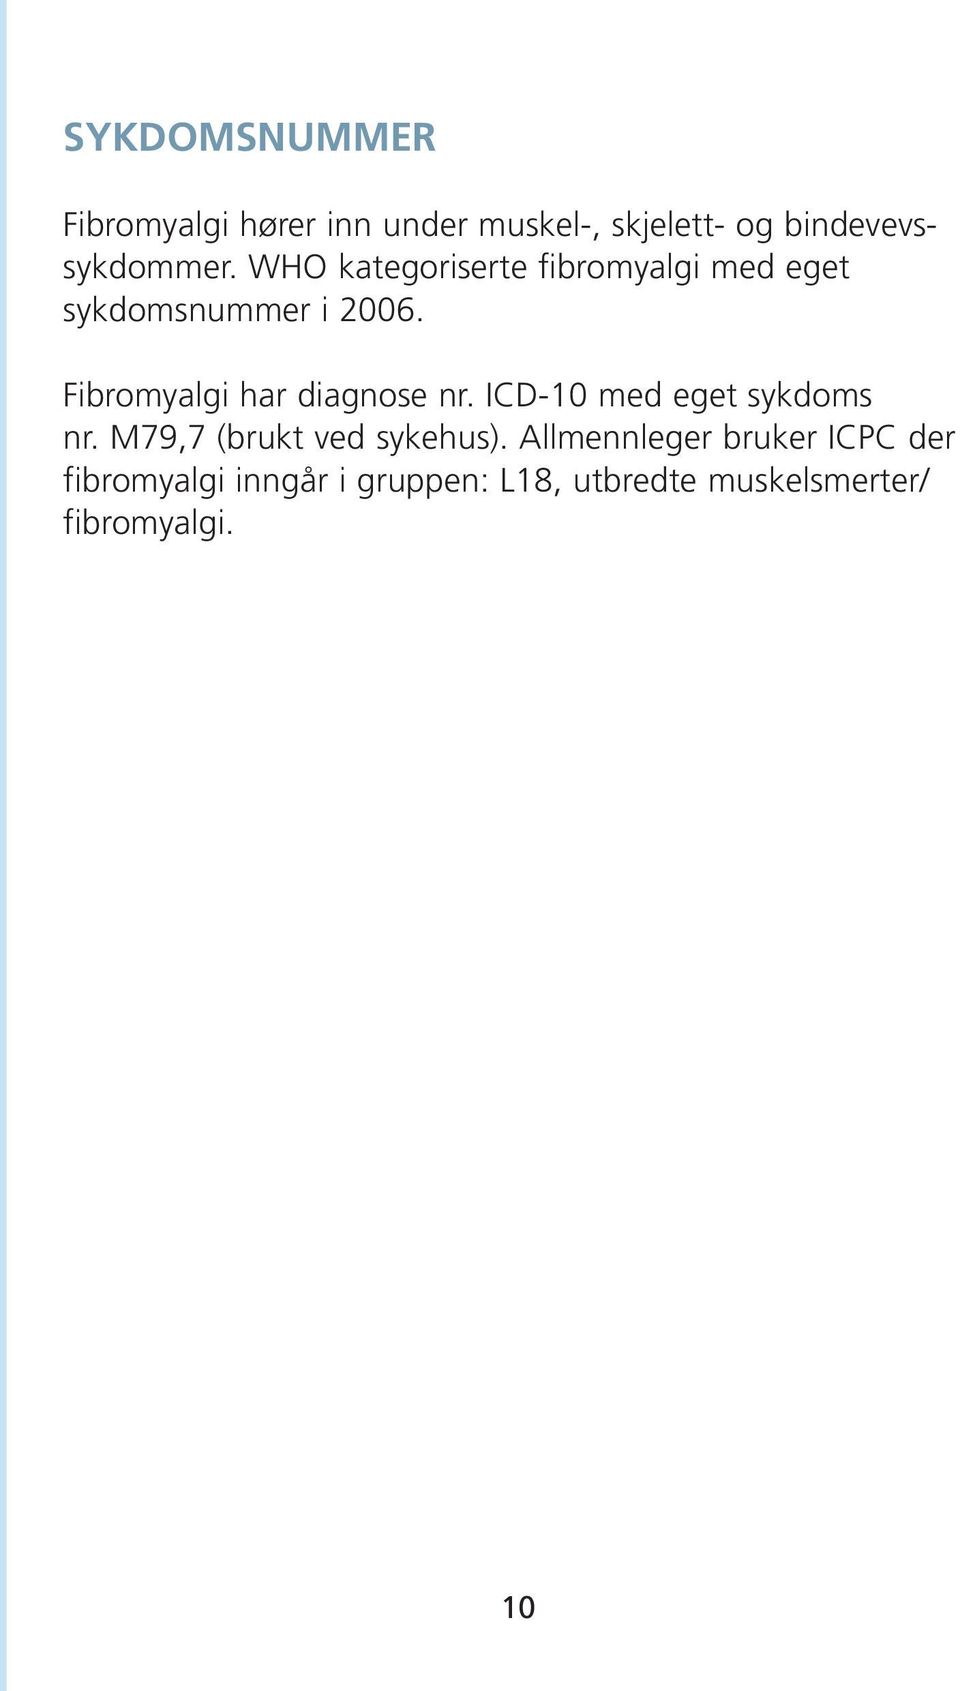 Fibromyalgi har diagnose nr. ICD-10 med eget sykdoms nr. M79,7 (brukt ved sykehus).